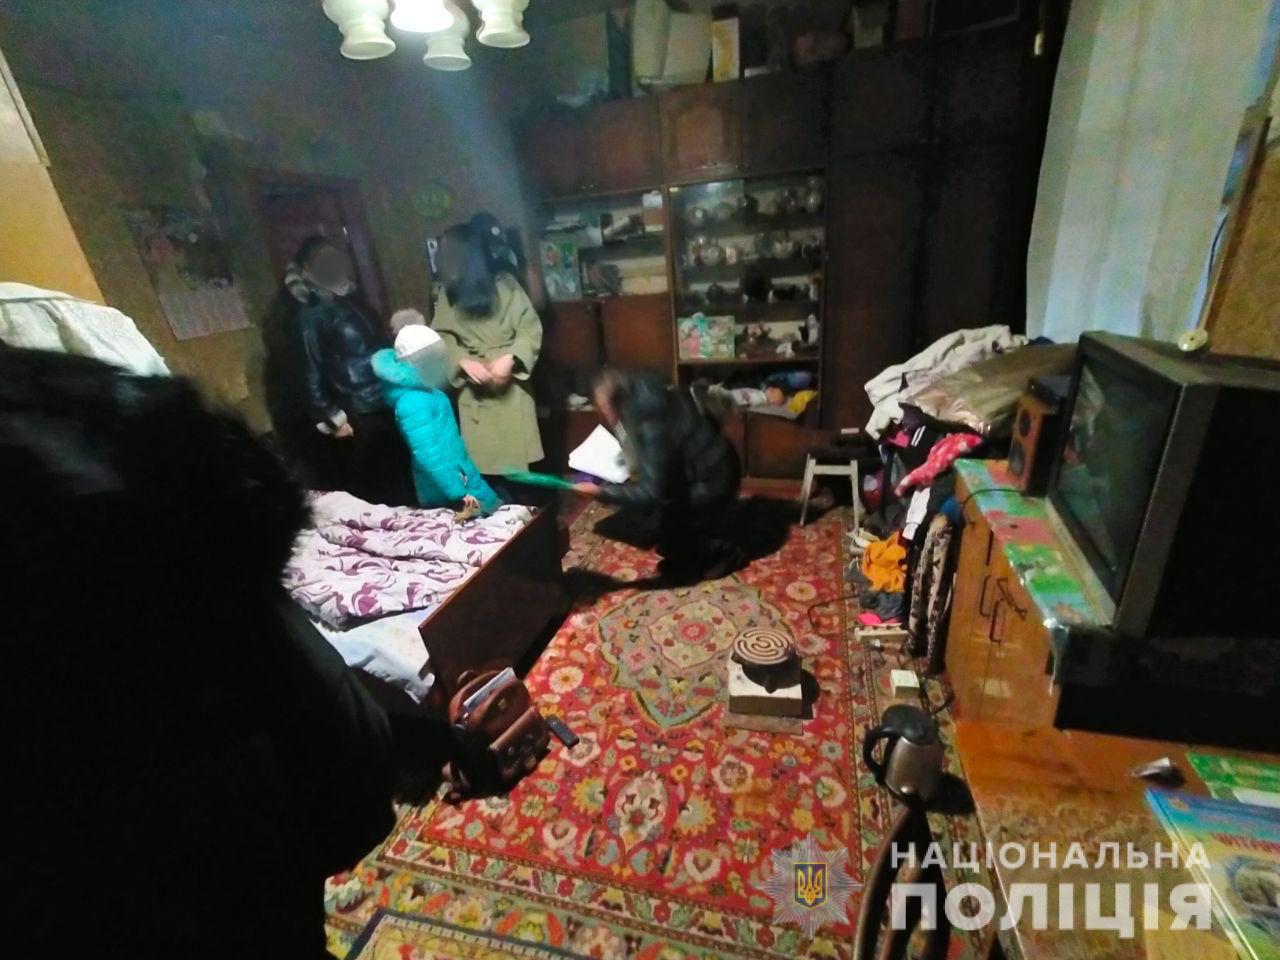 Без еды и отопления: под Харьковом мать держала девочку в нечеловеческих условиях